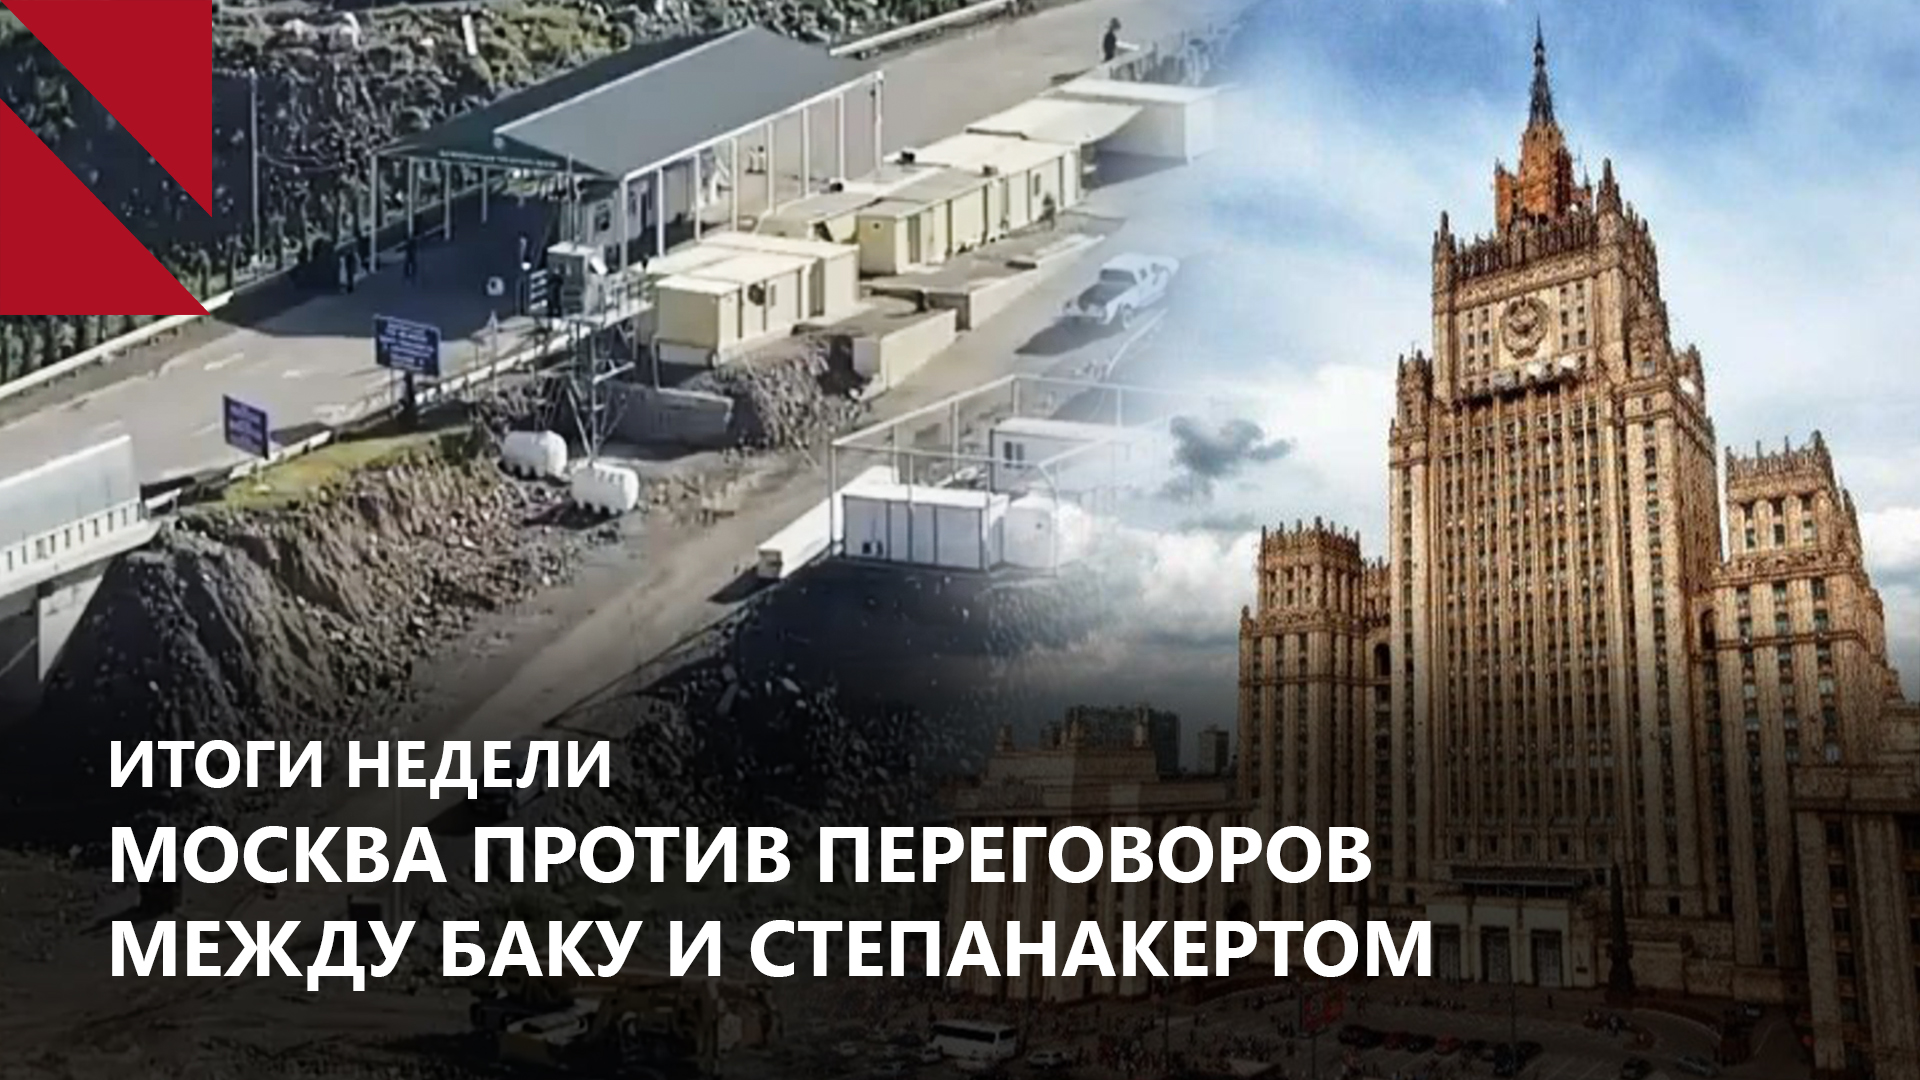 Москва хочет сорвать переговоры между Степанакертом и Баку: Итоги недели